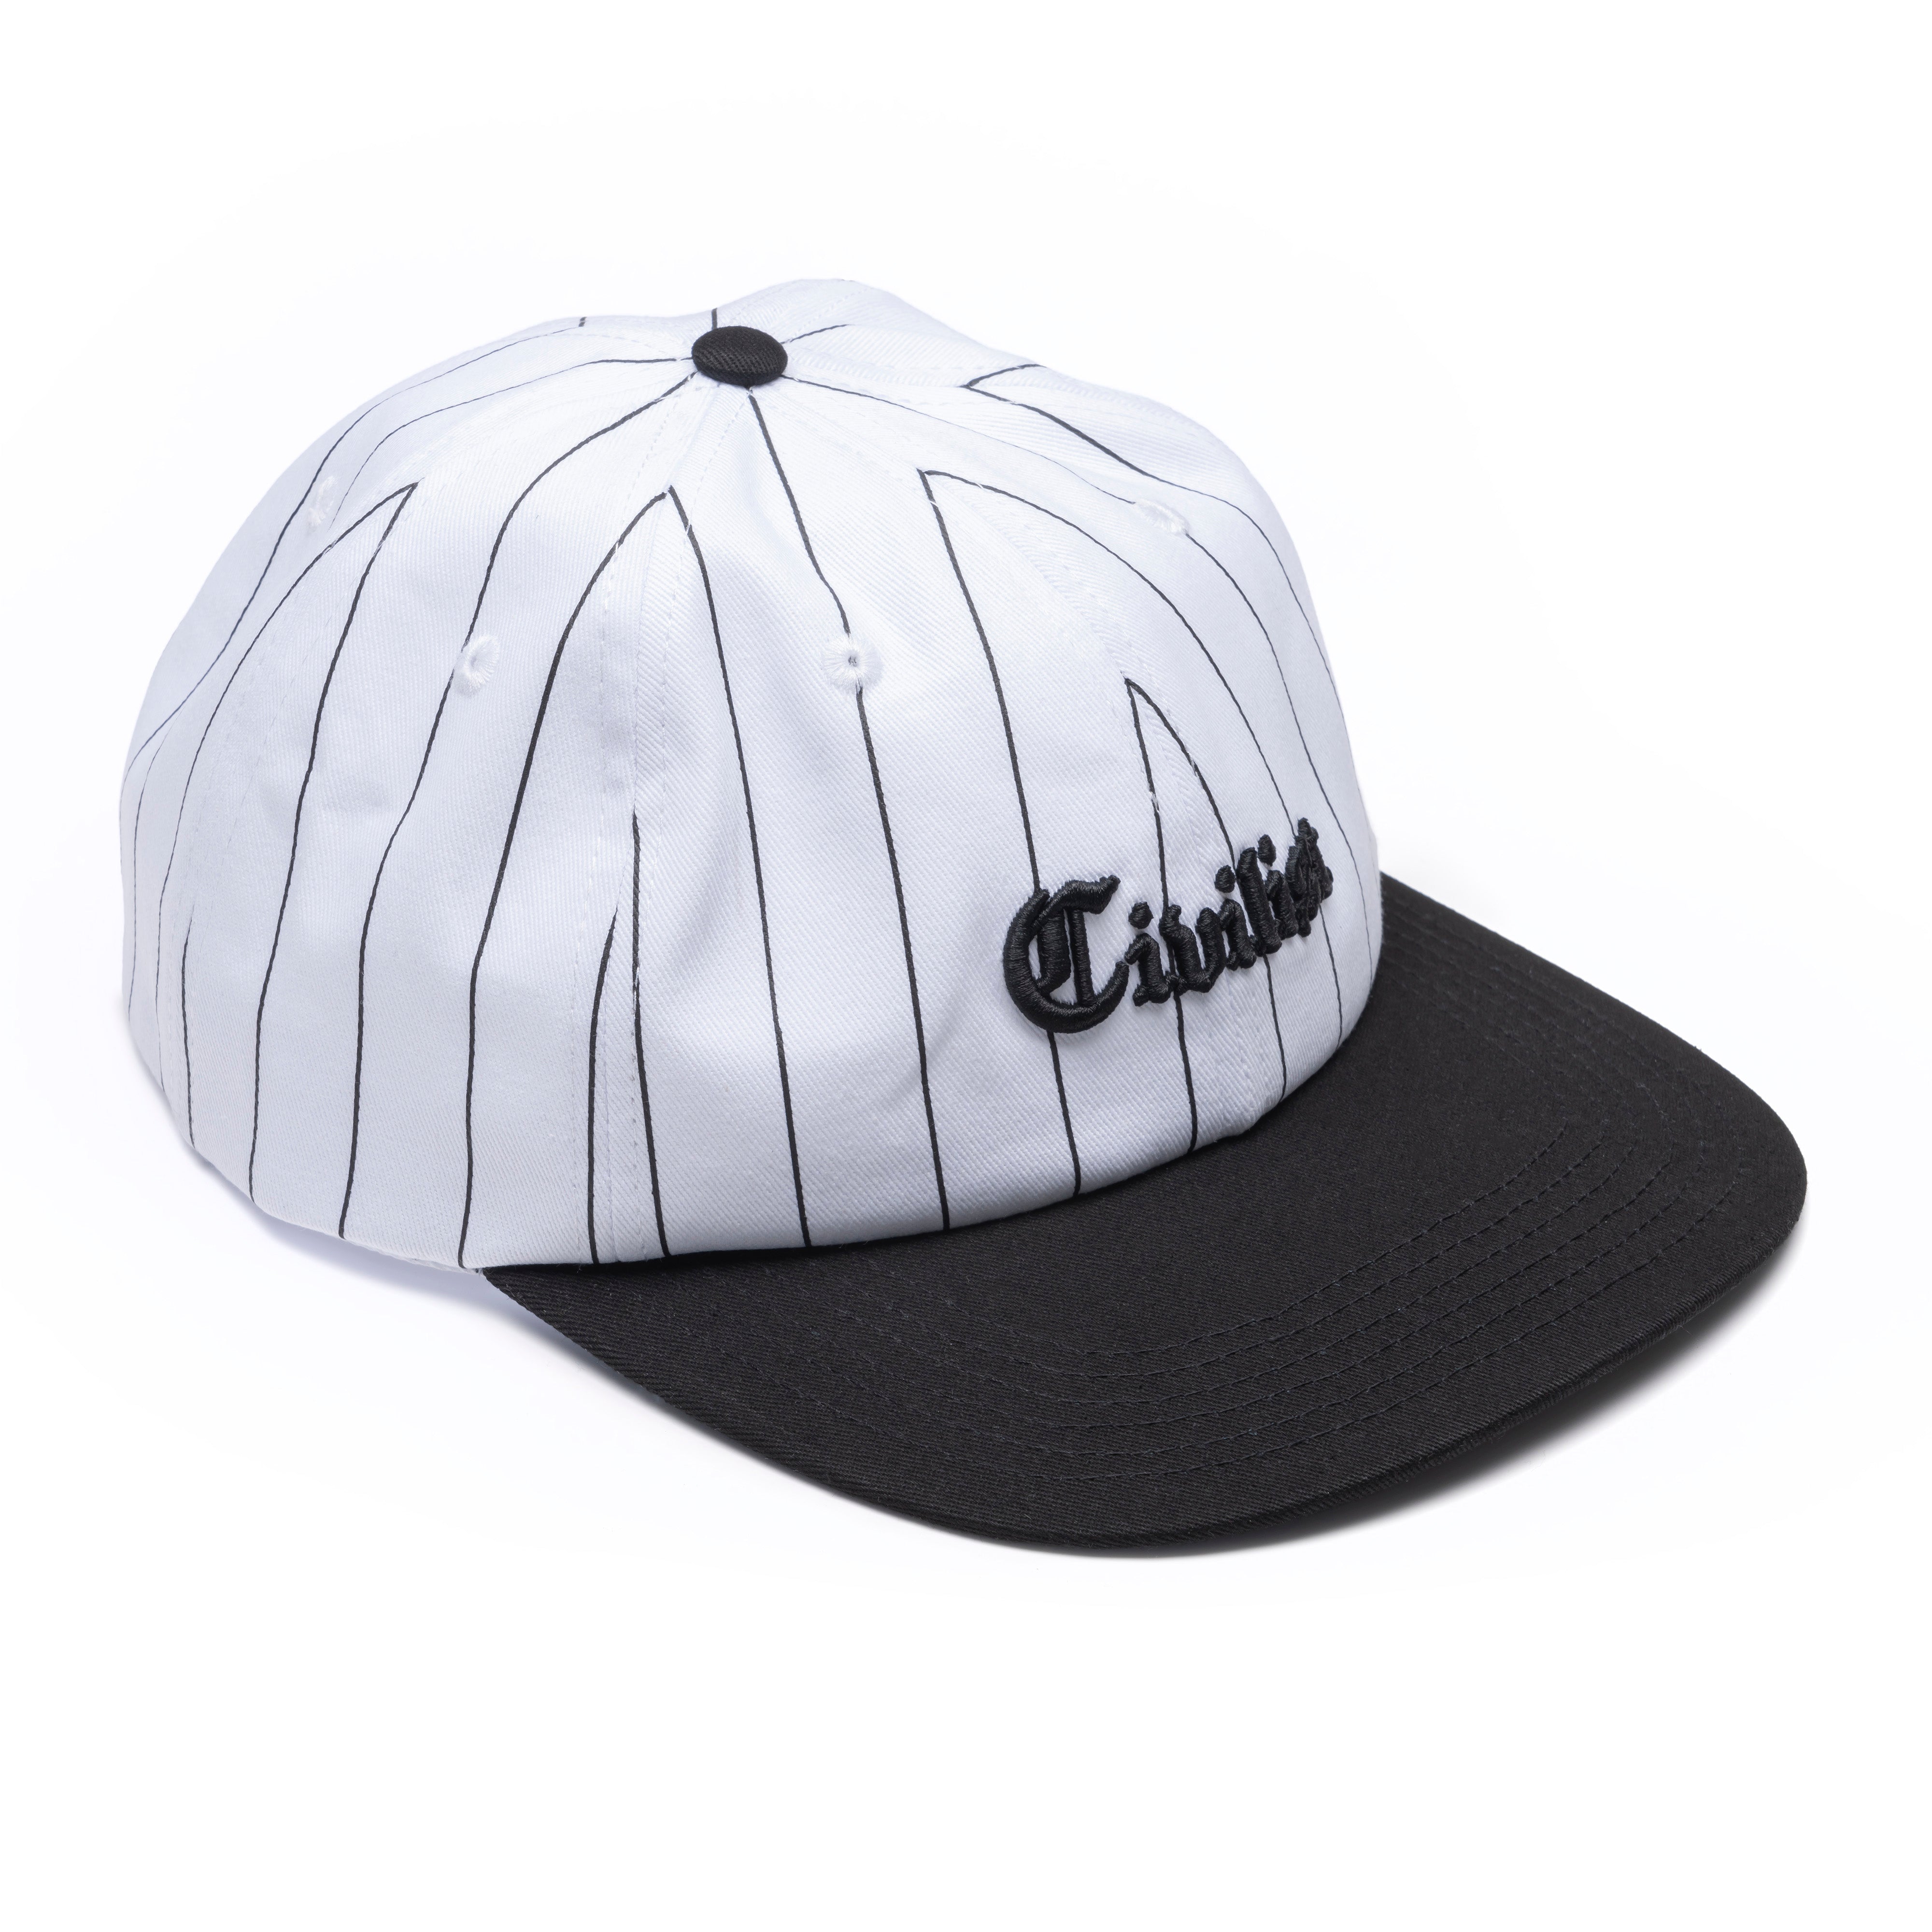 Civilist Omni Cap - White/Black